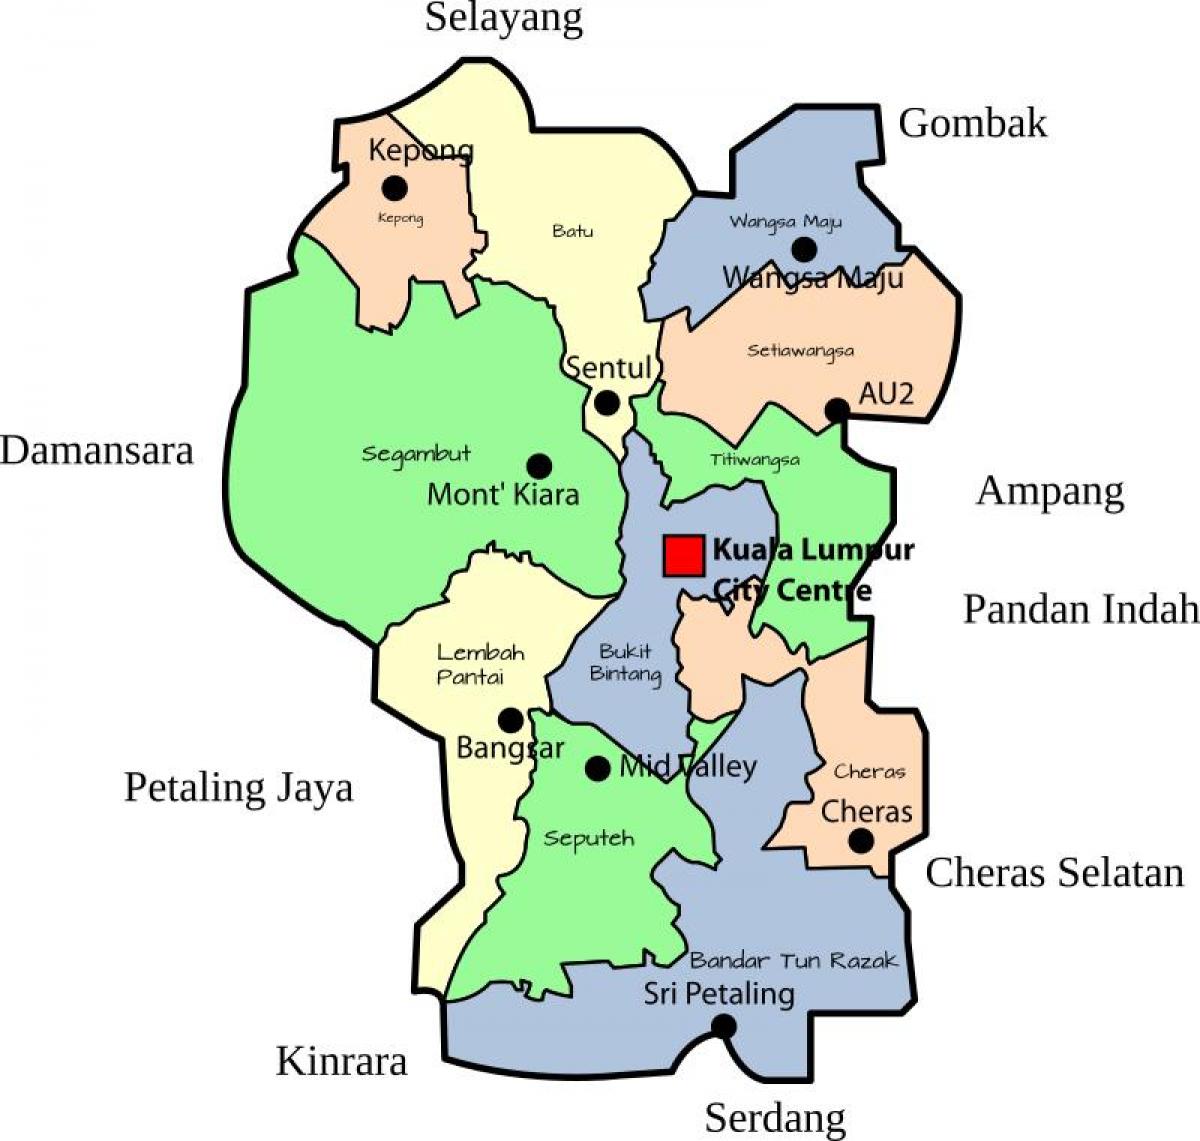 Mapa del distrito de Kuala Lumpur (KL)